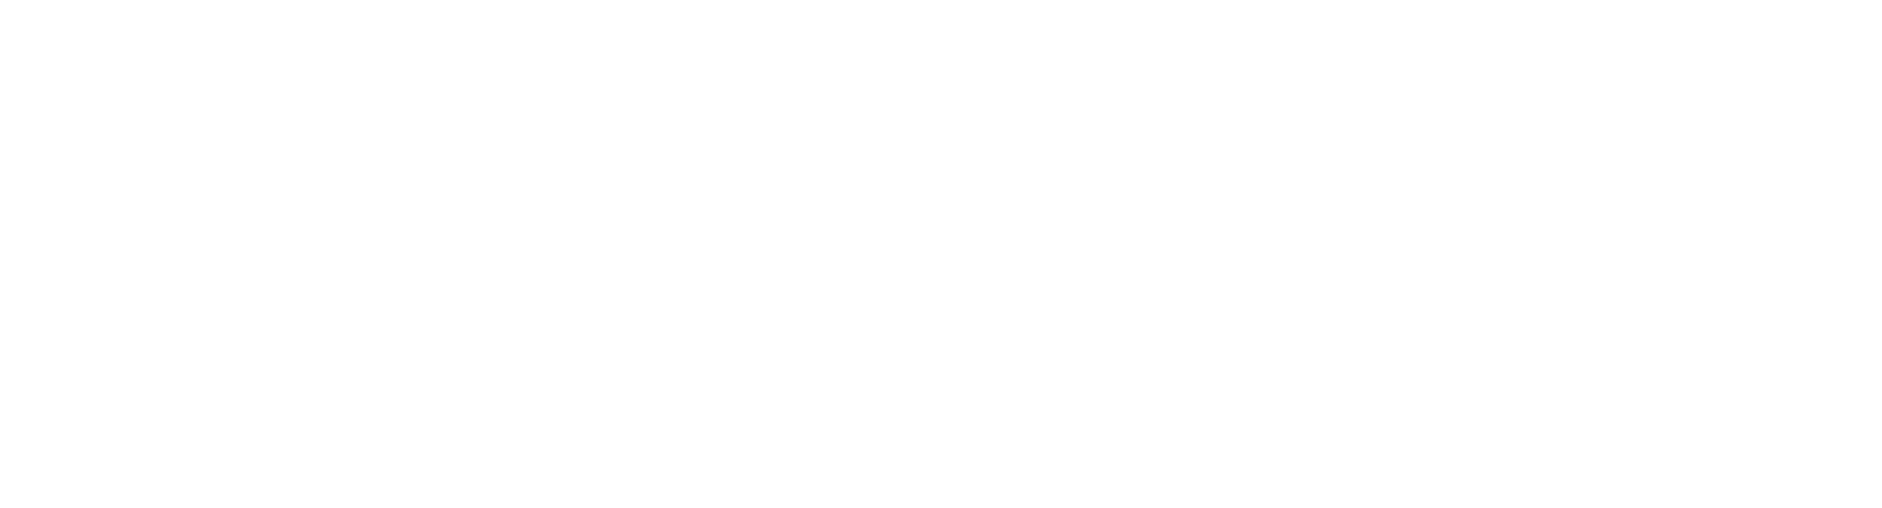 Member of Baby loss awareness